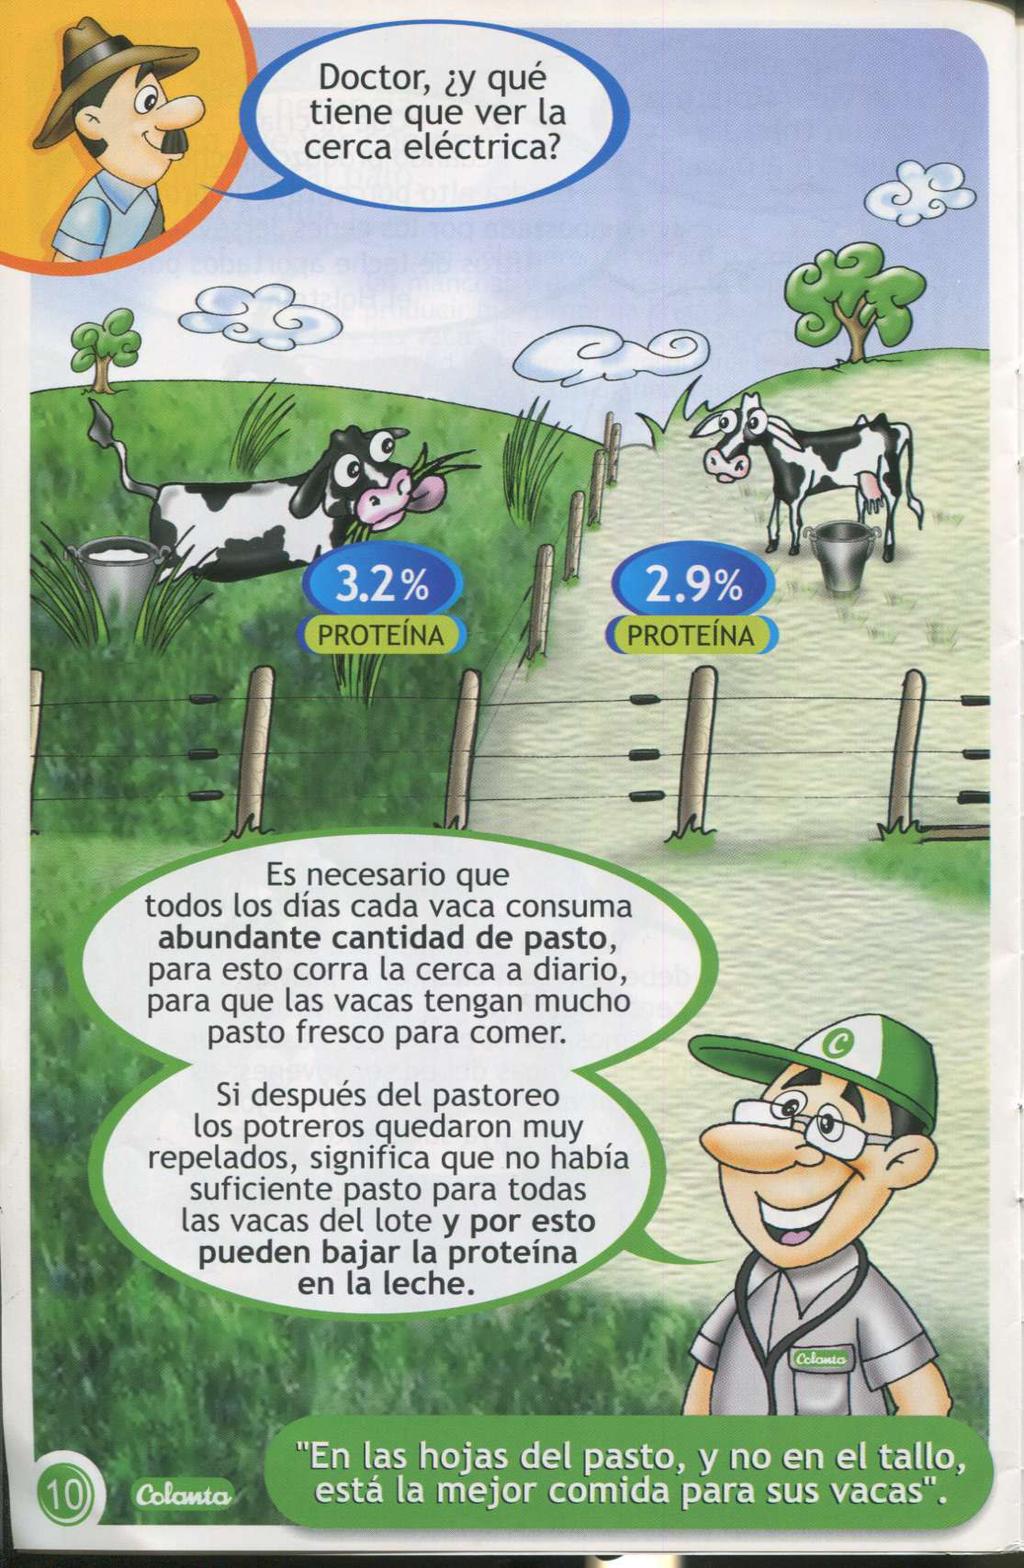 Es necesario que t odos los días cada vaca consuma zywvutsrqponmljihgfedcbazvut abundante cantidad de pasto, para est o corra la cerca a diario, para que las vacas t engan mucho past o fresco para